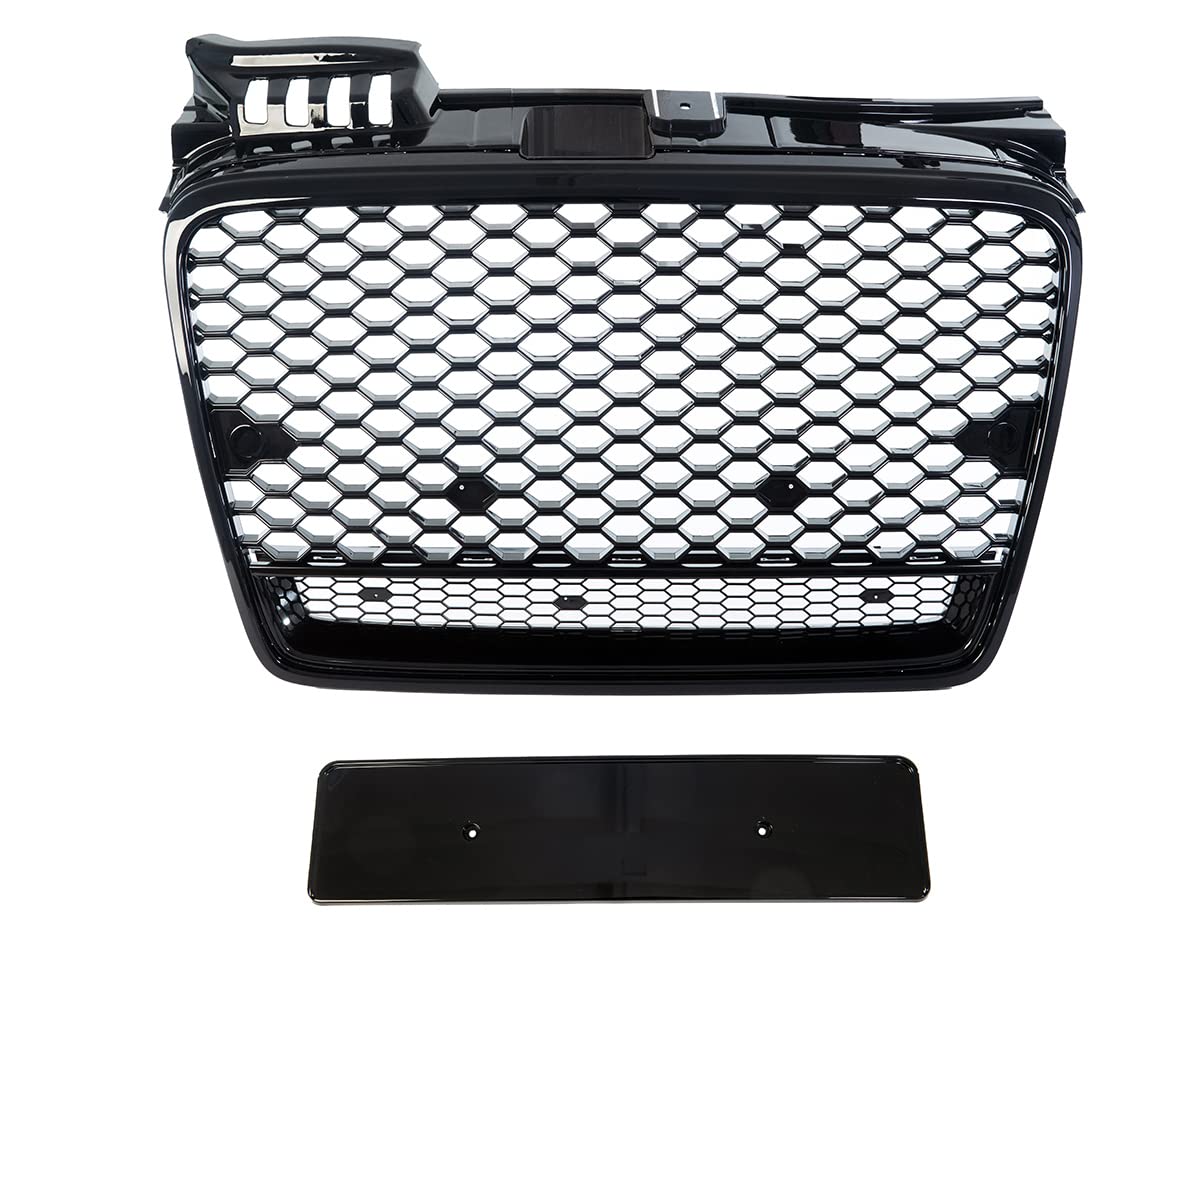 Kühlergrill Wabengrill schwarz glanz kompatibel für Audi A4 B7 04-08 Waben Grill nicht RS4 Quattro DM Autoteile 4226 von DM Autoteile